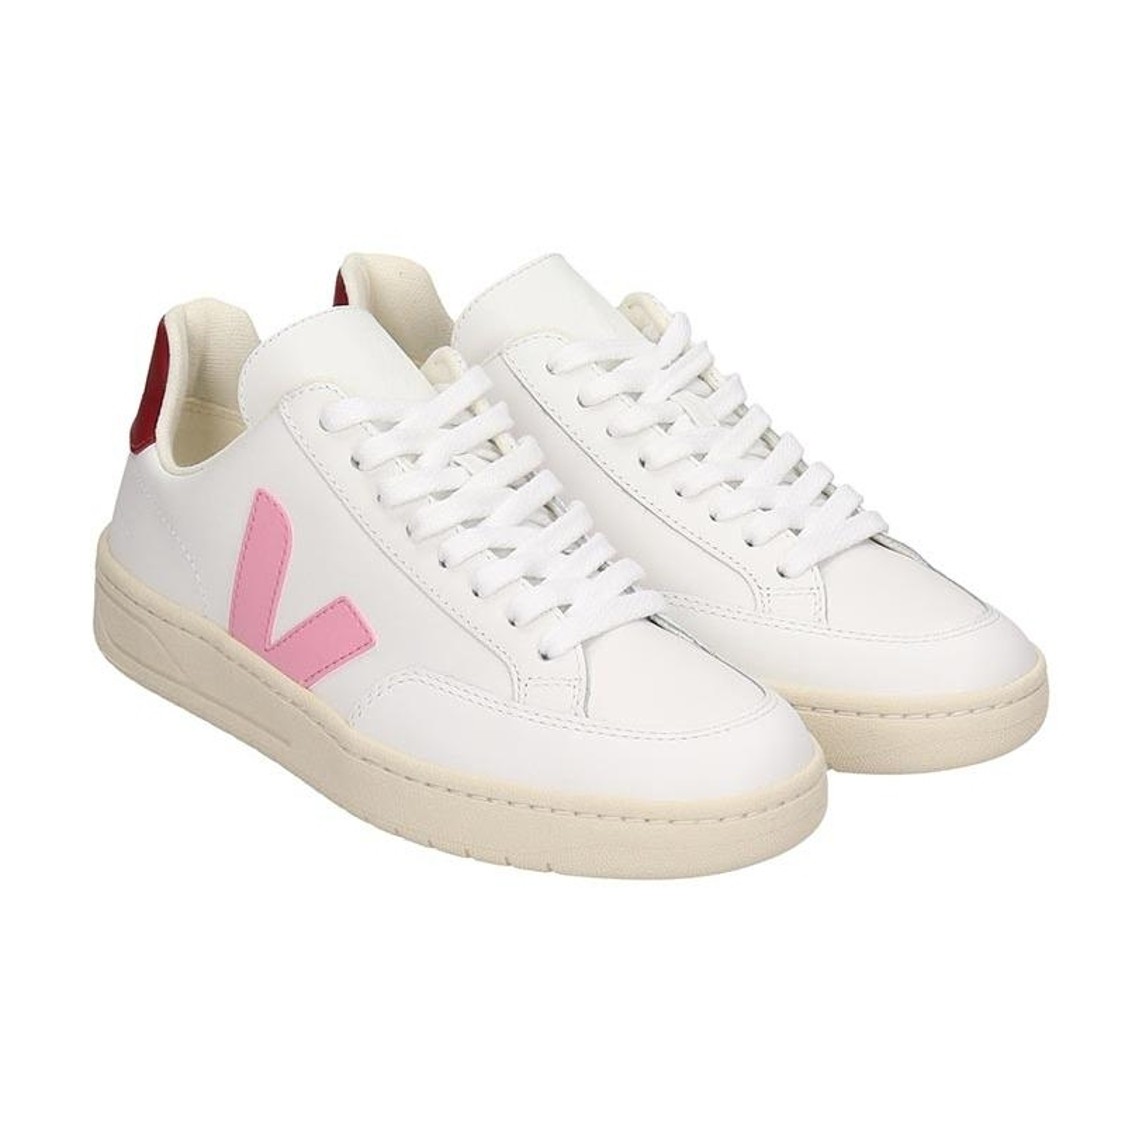 shop VEJA  Scarpe: Veja sneaker in pelle bianca.
Modello V-12.
Logo V laterale in pelle rosa.
Rifinitura in colore rosso sul dietro.
Suola in gomma.
Made in Brasil. XDW021812V12-ROSA number 3603878